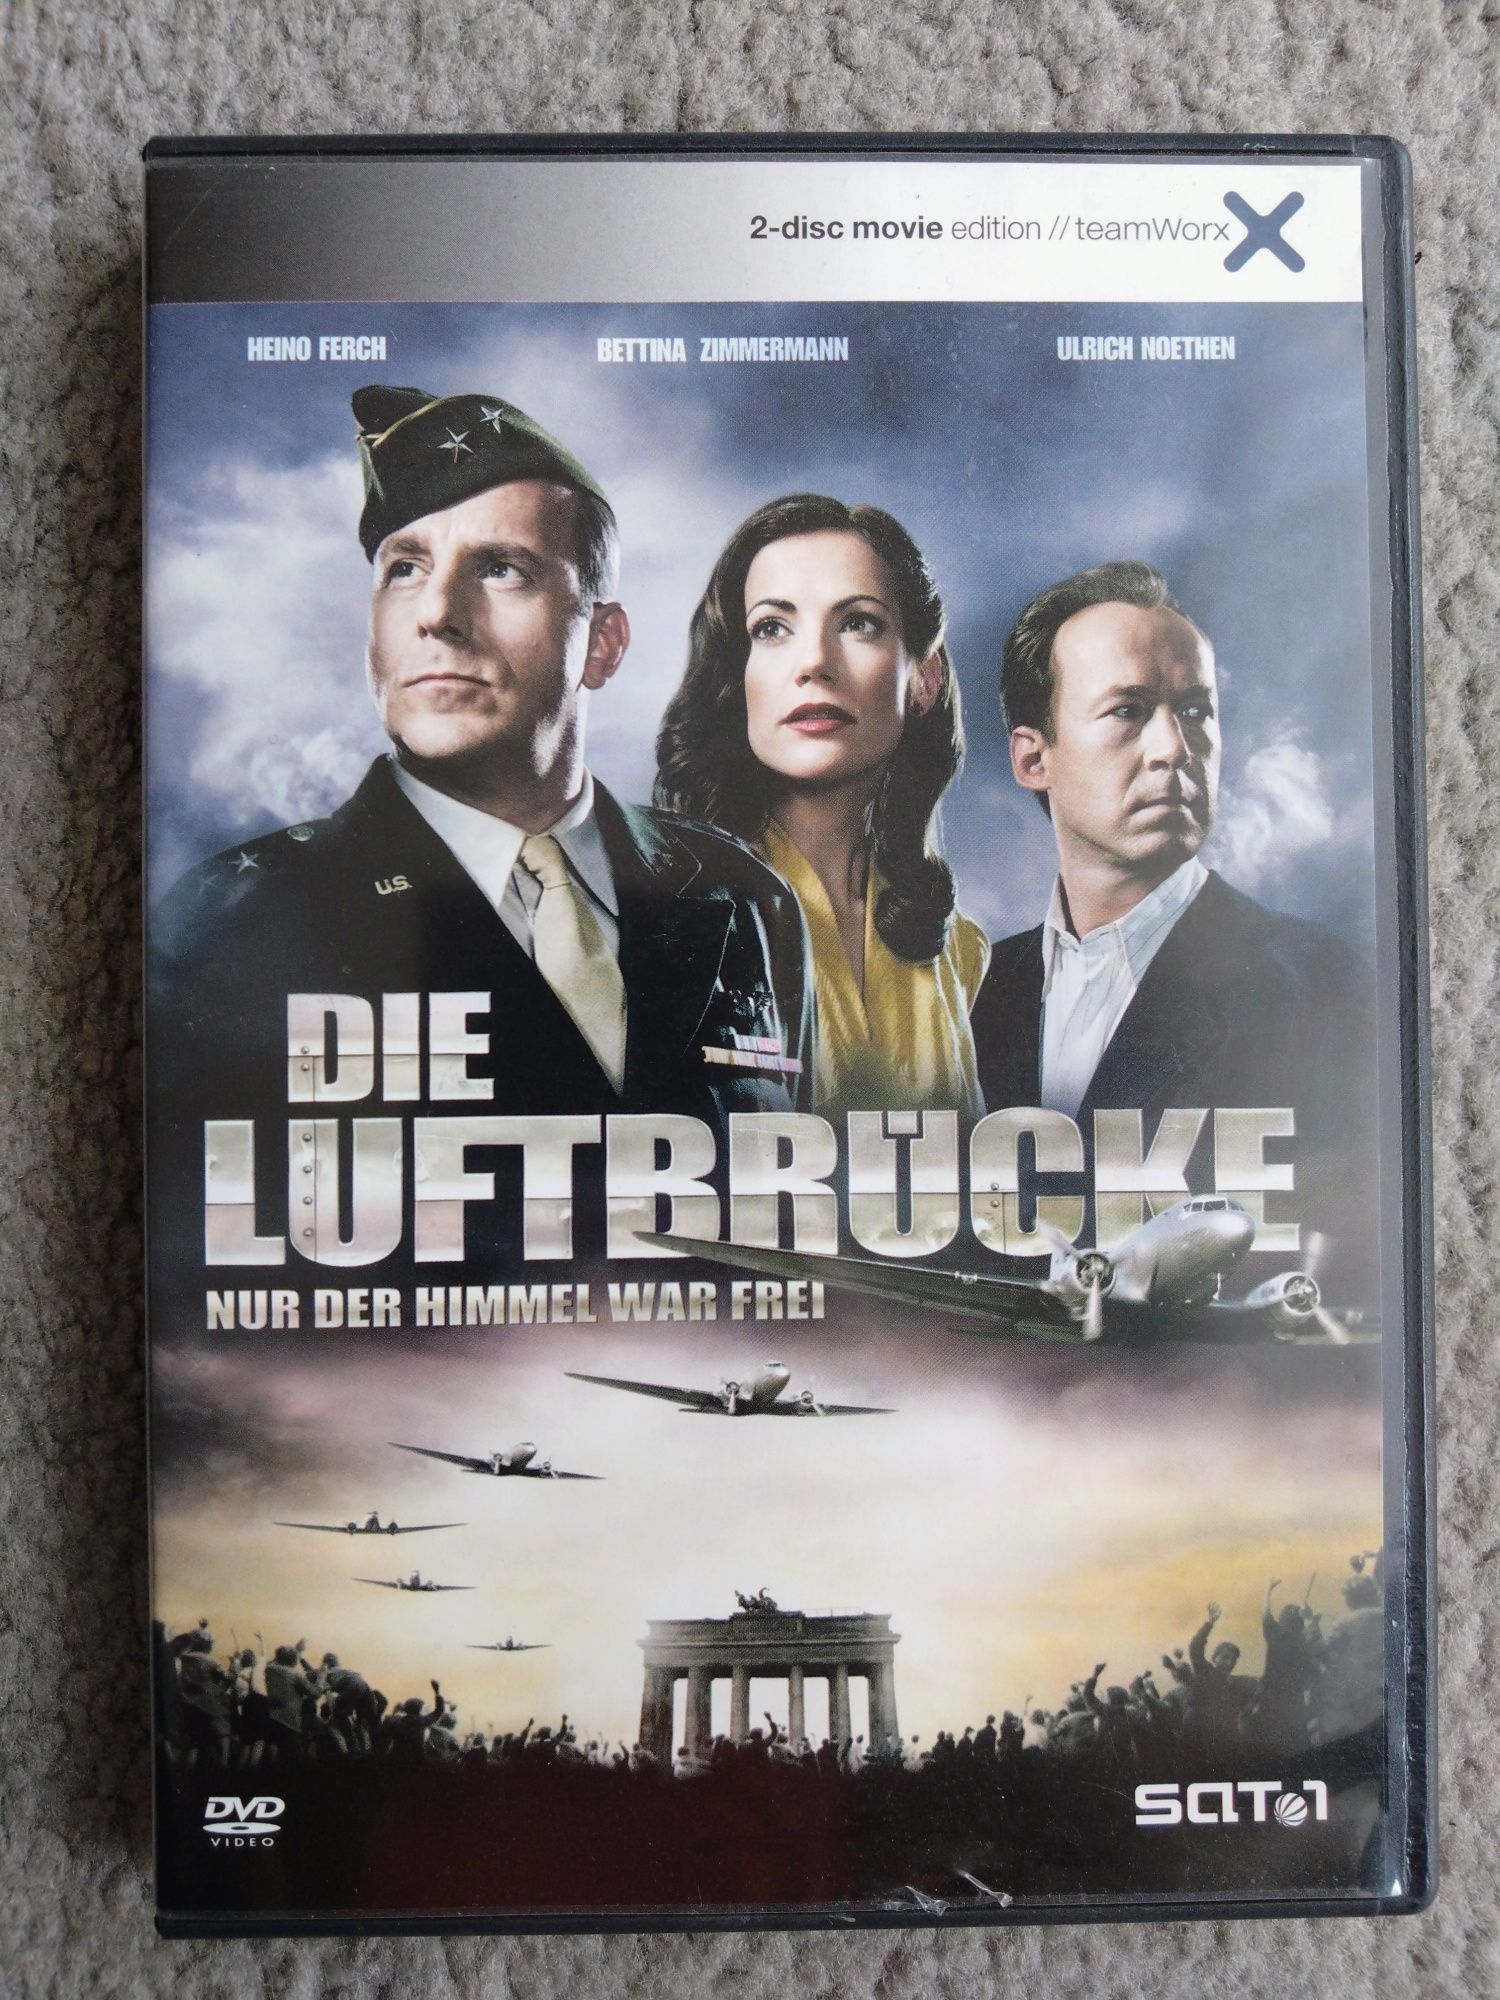 Die Luftbrucke - DVD x 2.